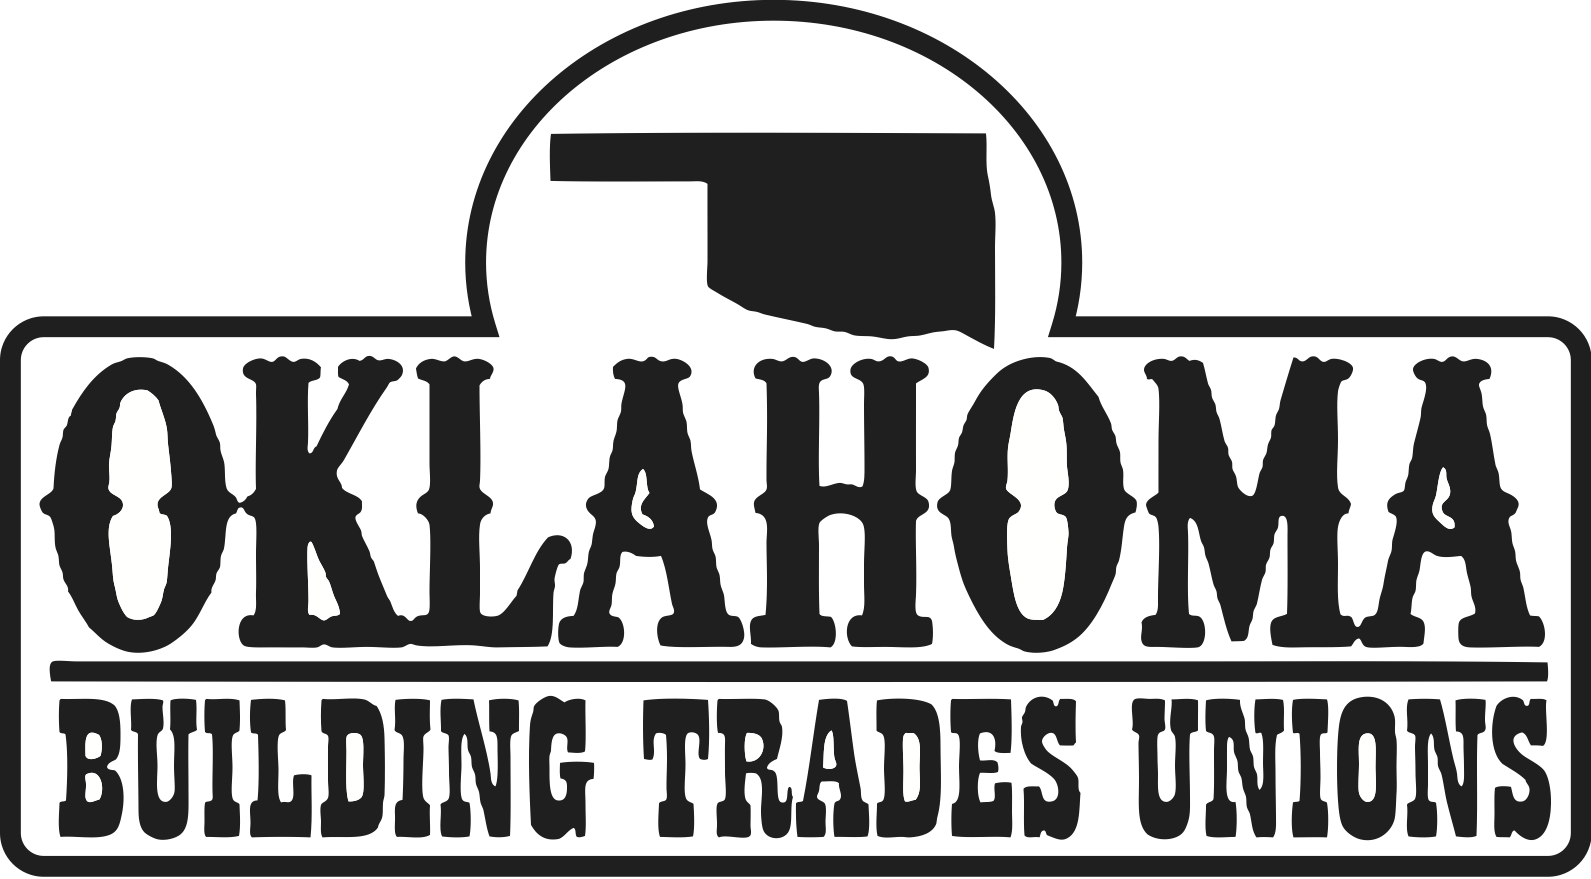 Oklahoma Building Trades